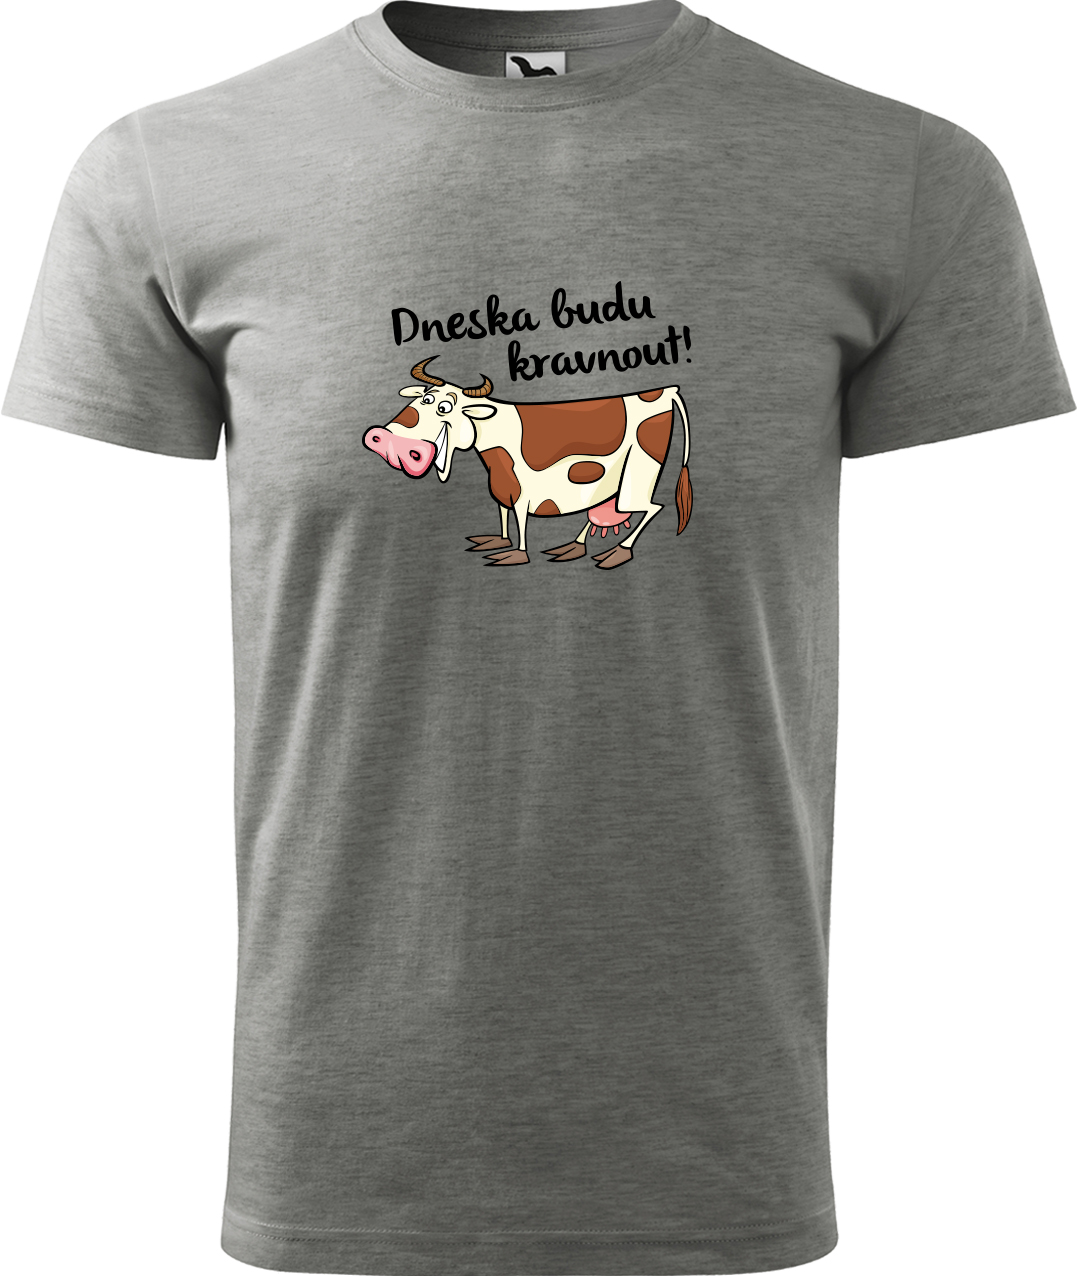 Pánské tričko s krávou - Dneska budu kravnout! Velikost: XL, Barva: Tmavě šedý melír (12), Střih: pánský